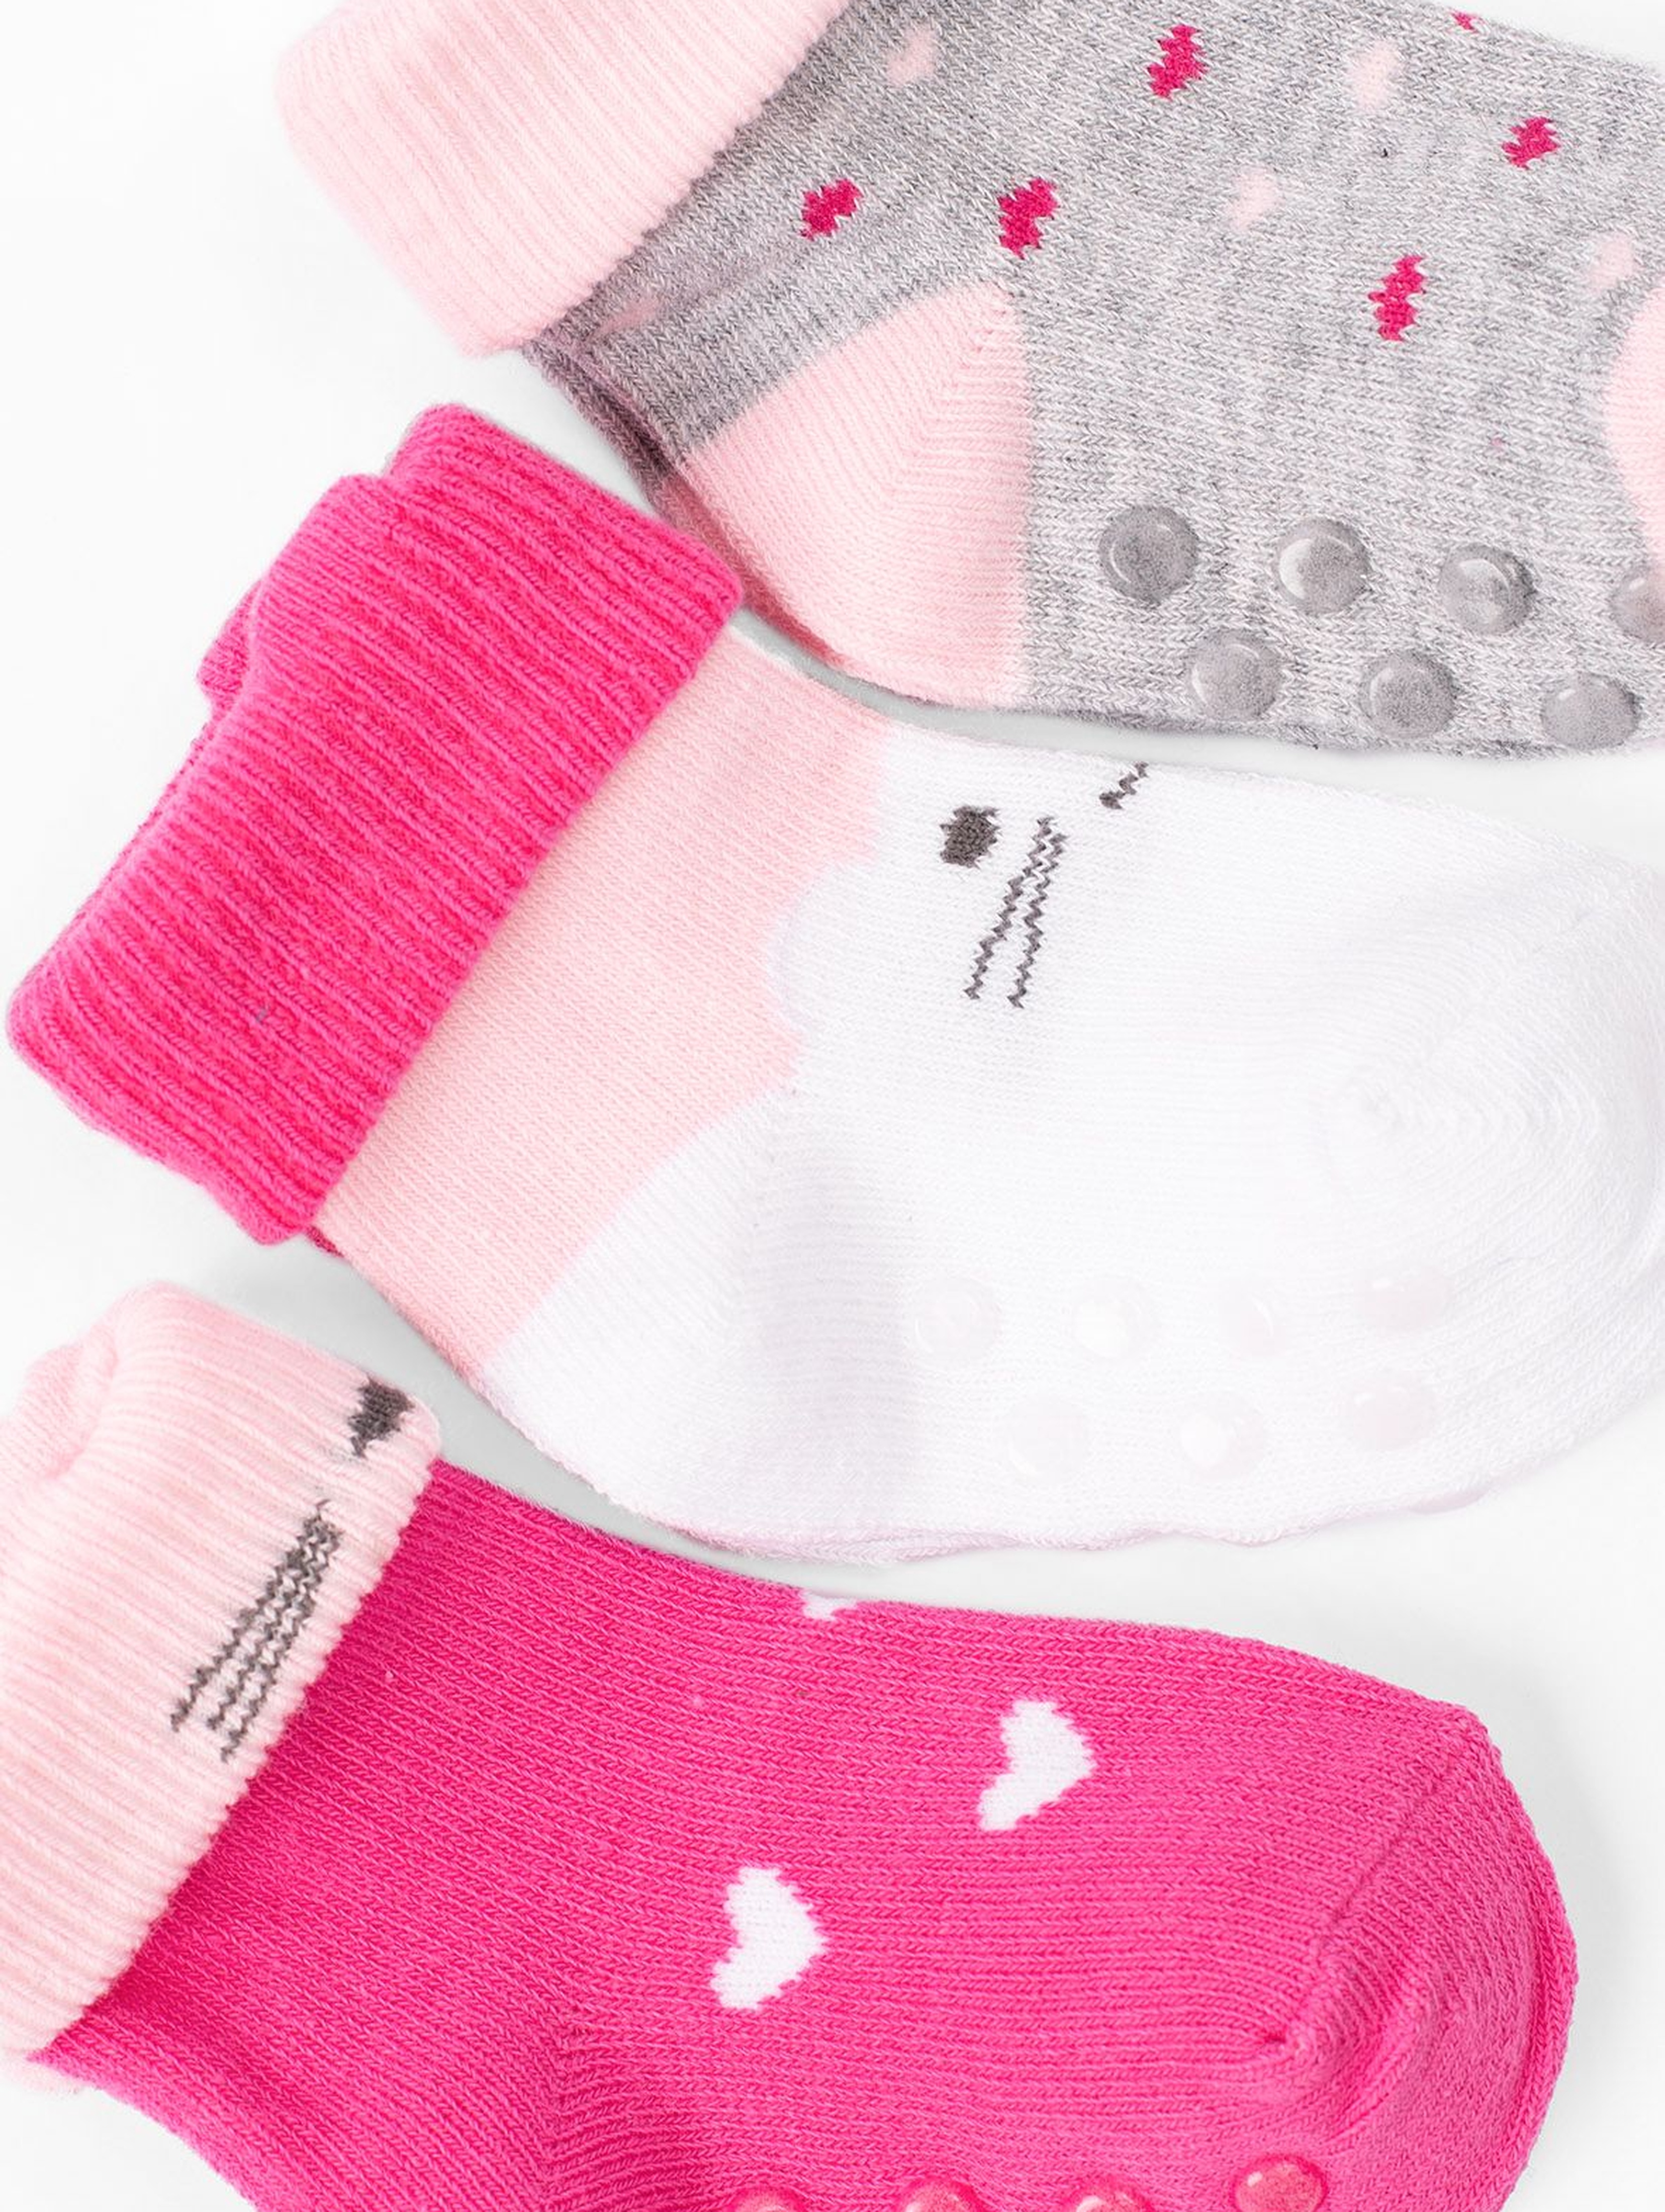 Skarpetki dla niemowlaka- różowo-szare z ABSem